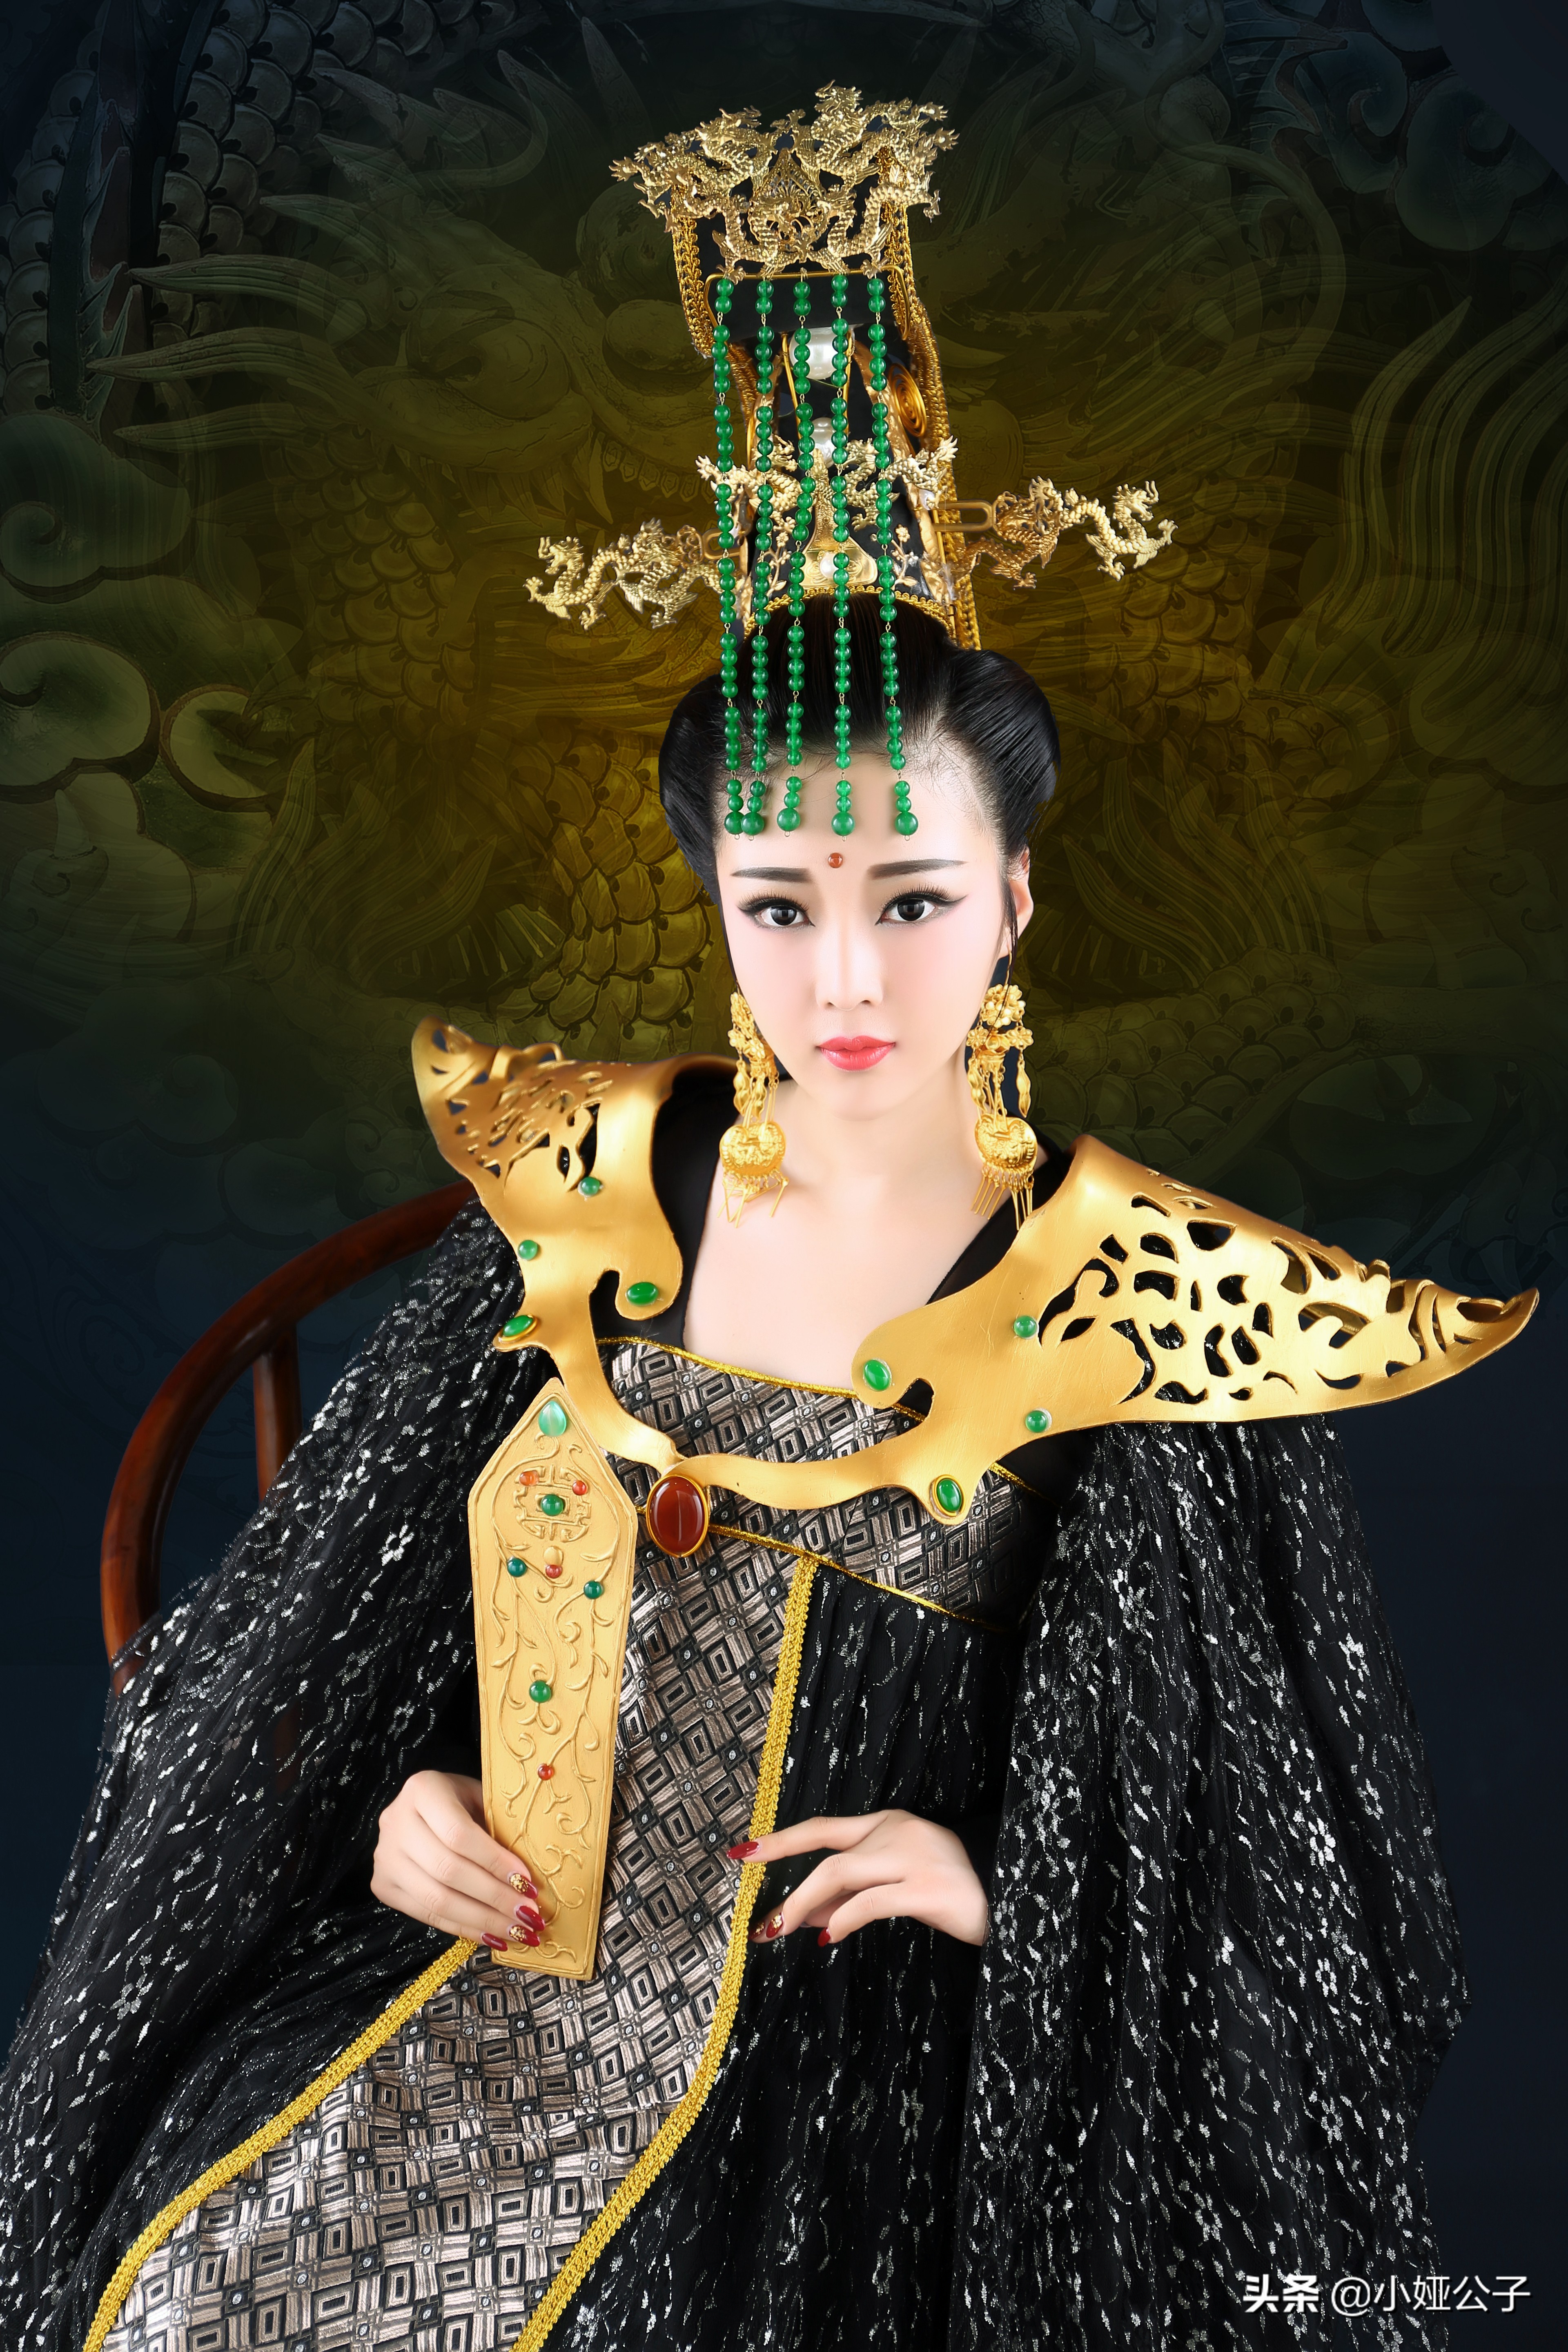 「唯武独尊」中国武周时期女皇帝武则天的丰功伟绩